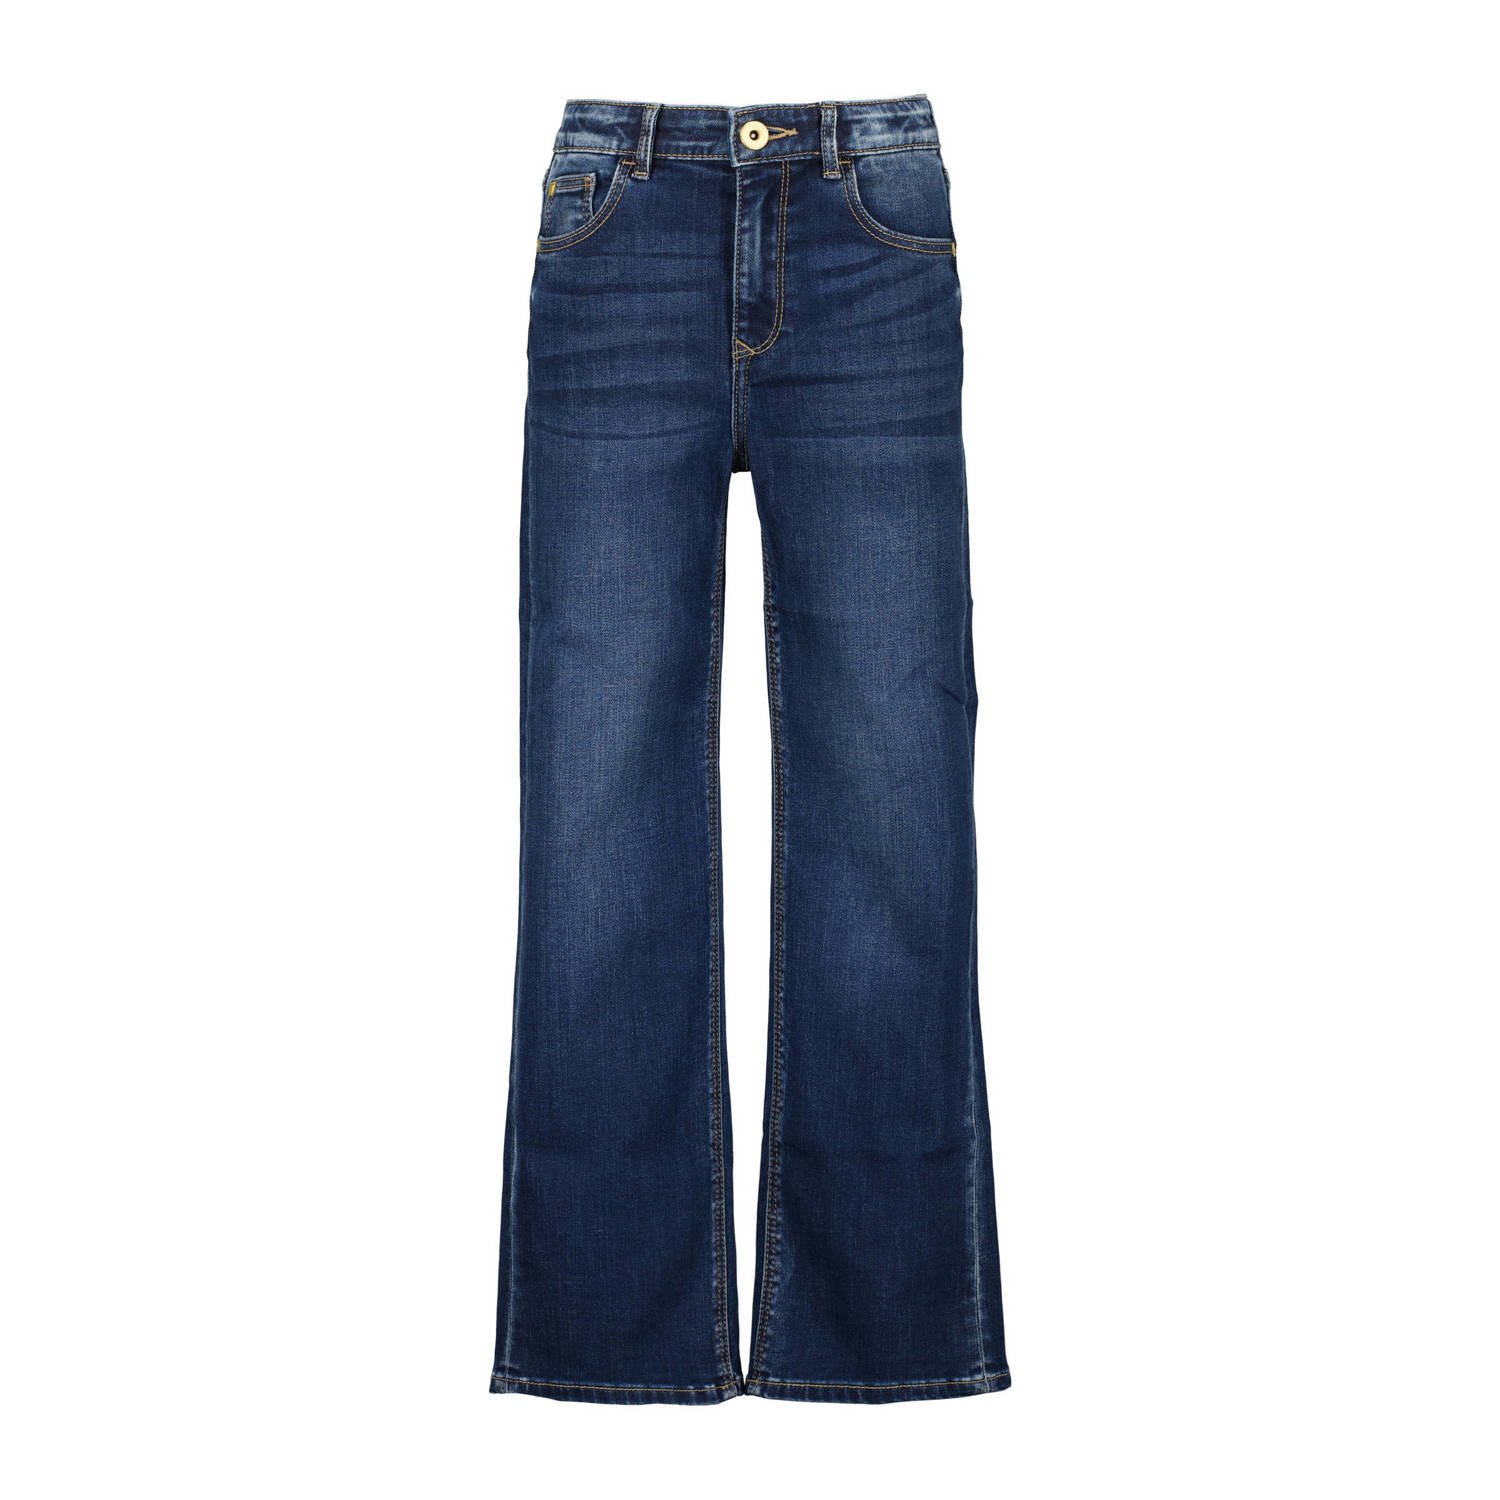 Vingino high waist loose fit jeans GIULIA dark used